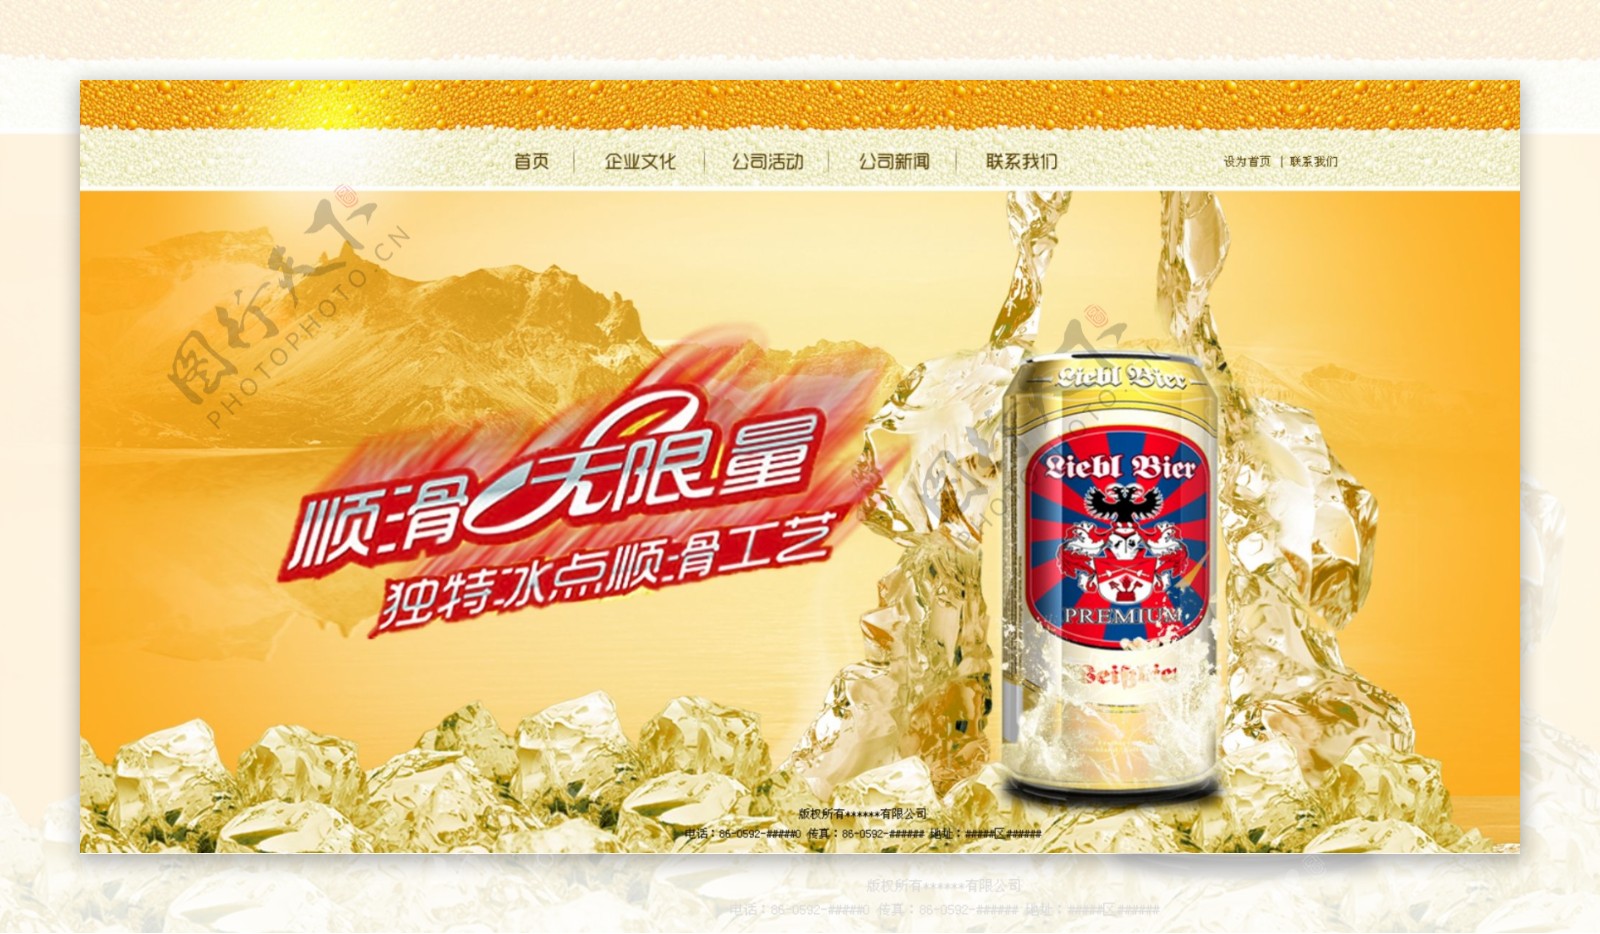 啤酒网站psd源文件图片